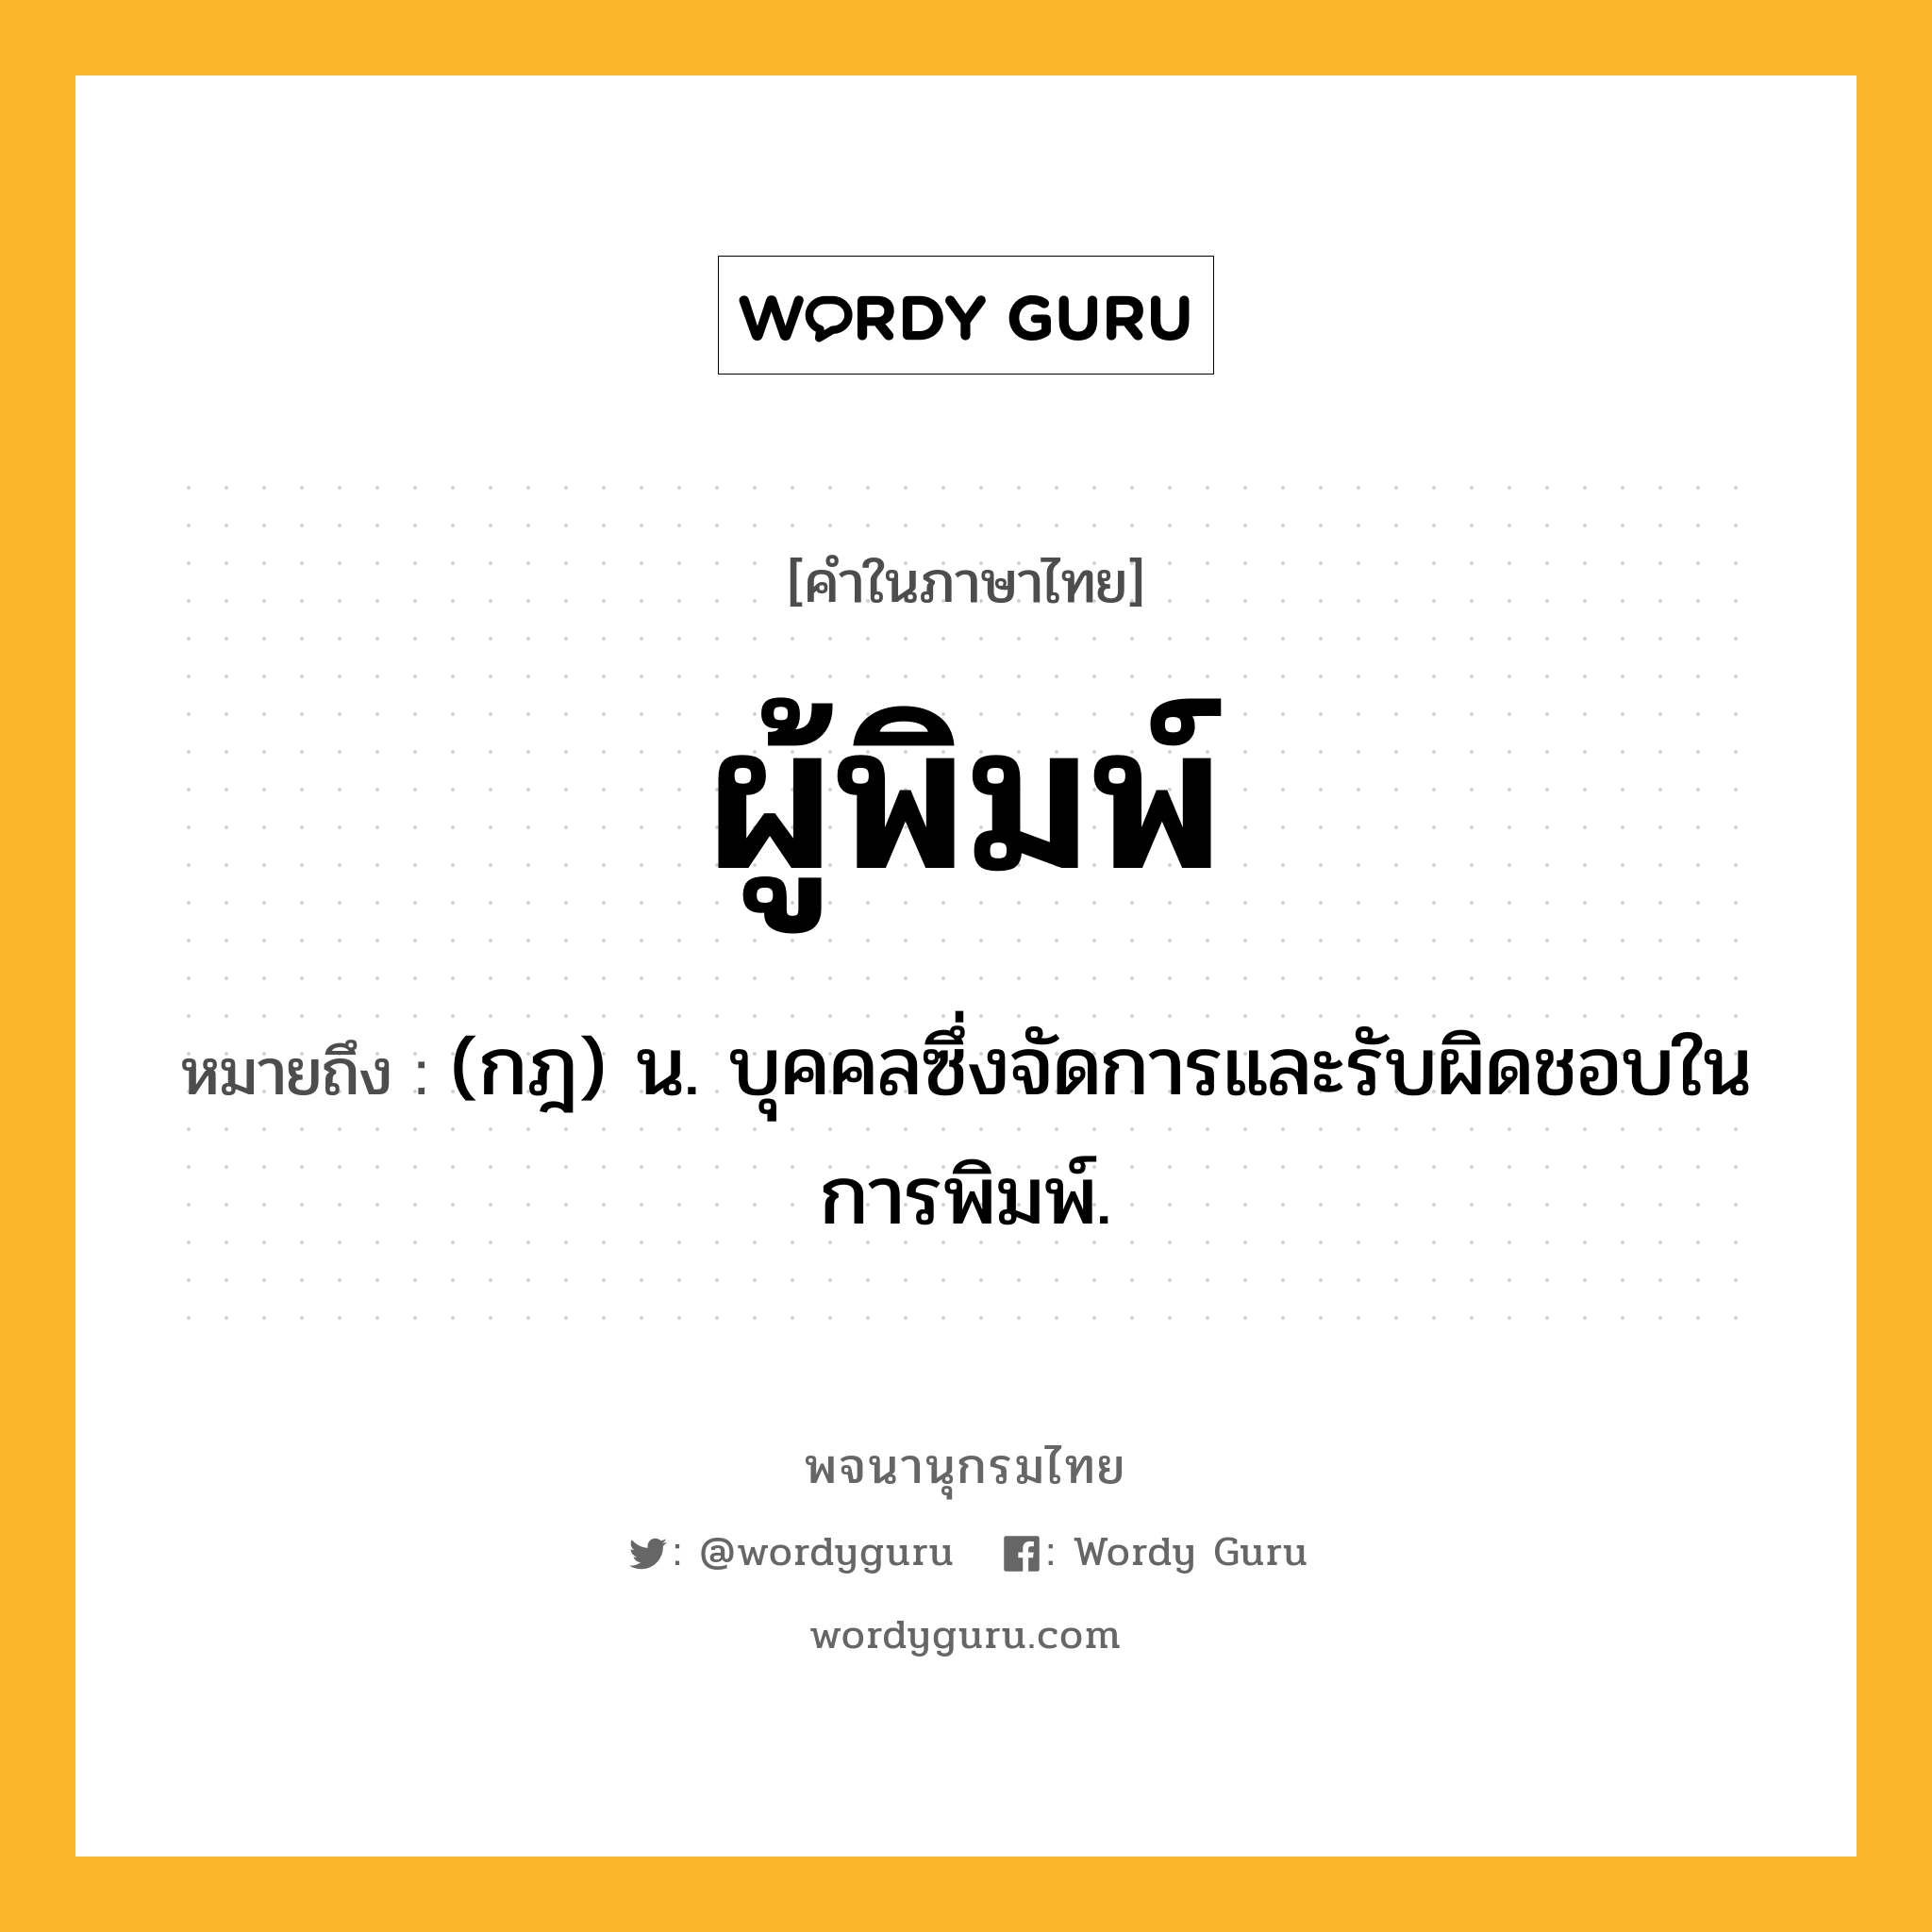 ผู้พิมพ์ หมายถึงอะไร?, คำในภาษาไทย ผู้พิมพ์ หมายถึง (กฎ) น. บุคคลซึ่งจัดการและรับผิดชอบในการพิมพ์.